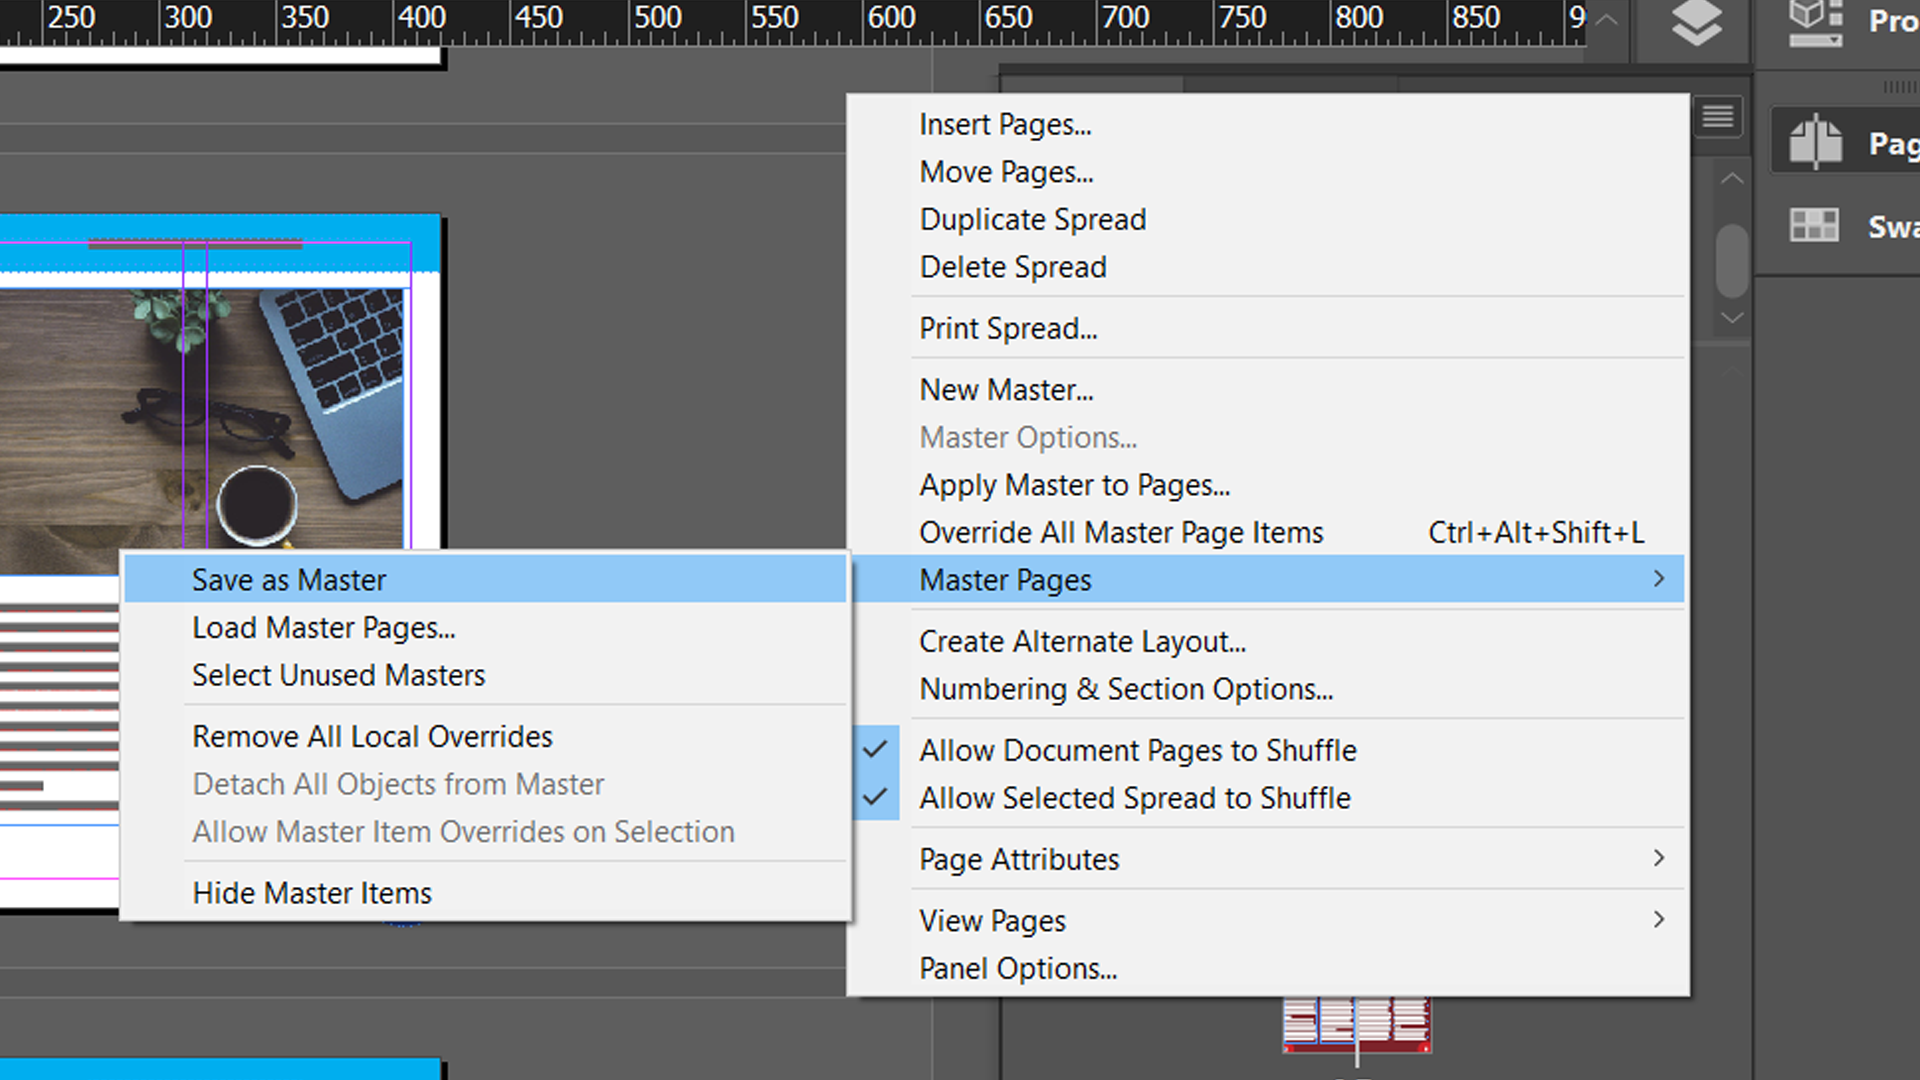 save as master - Come utilizzare le pagine master di Adobe InDesign per semplificare il flusso di lavoro